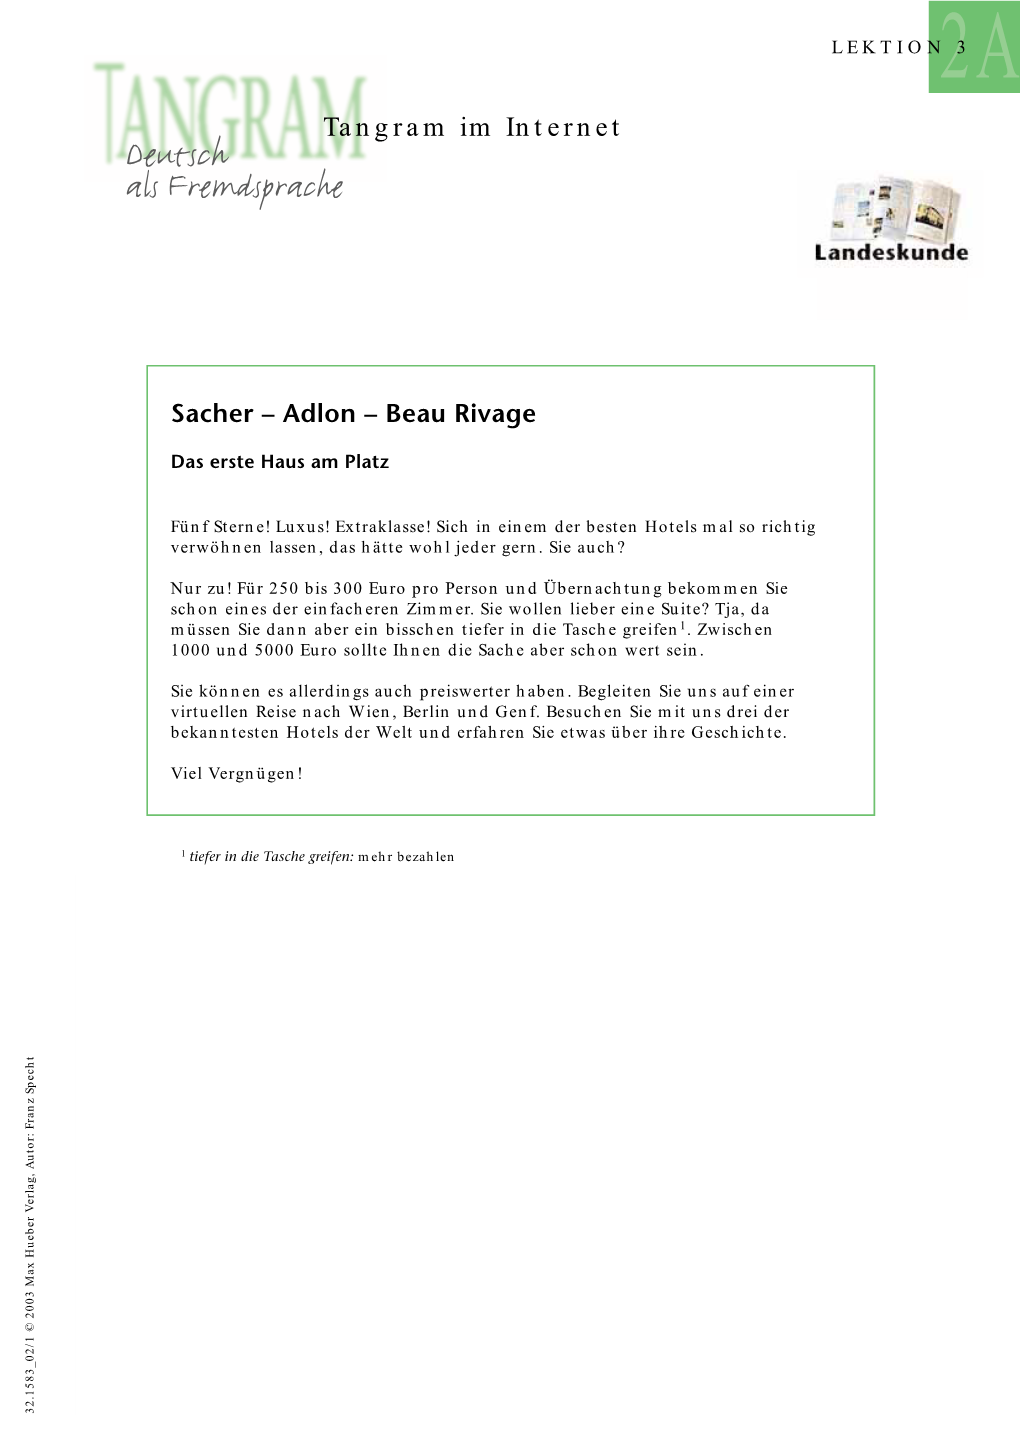 Sacher – Adlon – Beau Rivage